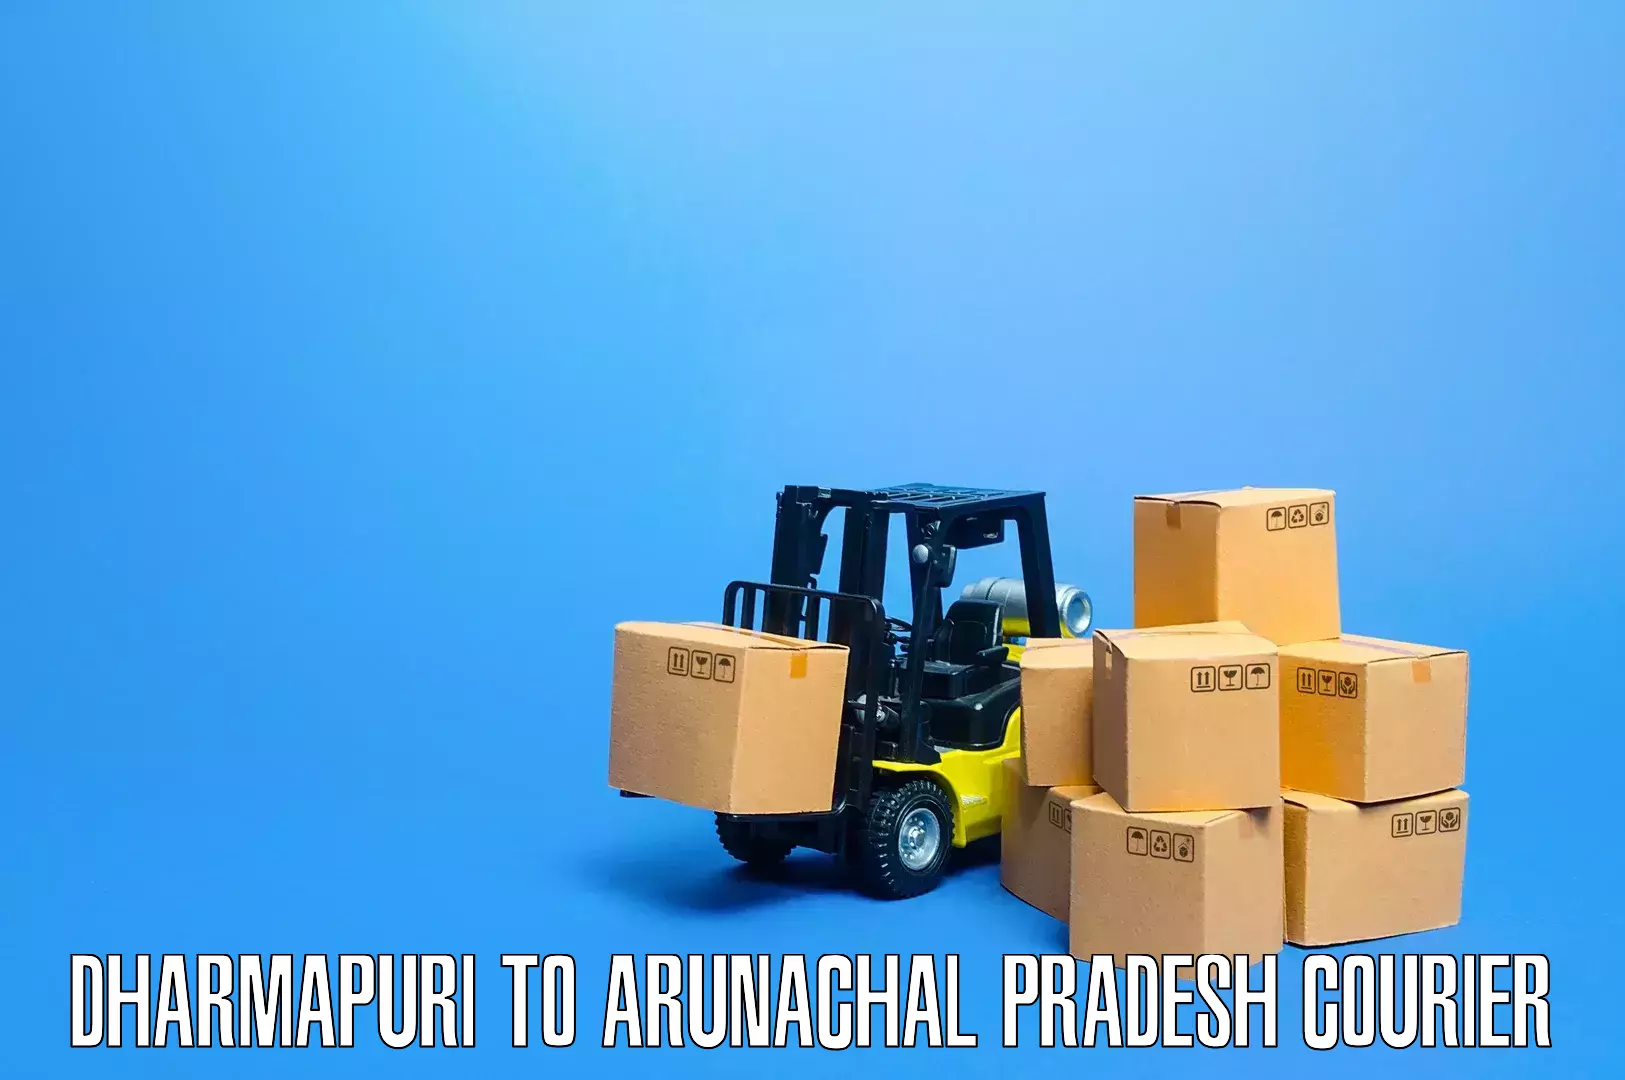 Furniture transport experts Dharmapuri to Arunachal Pradesh